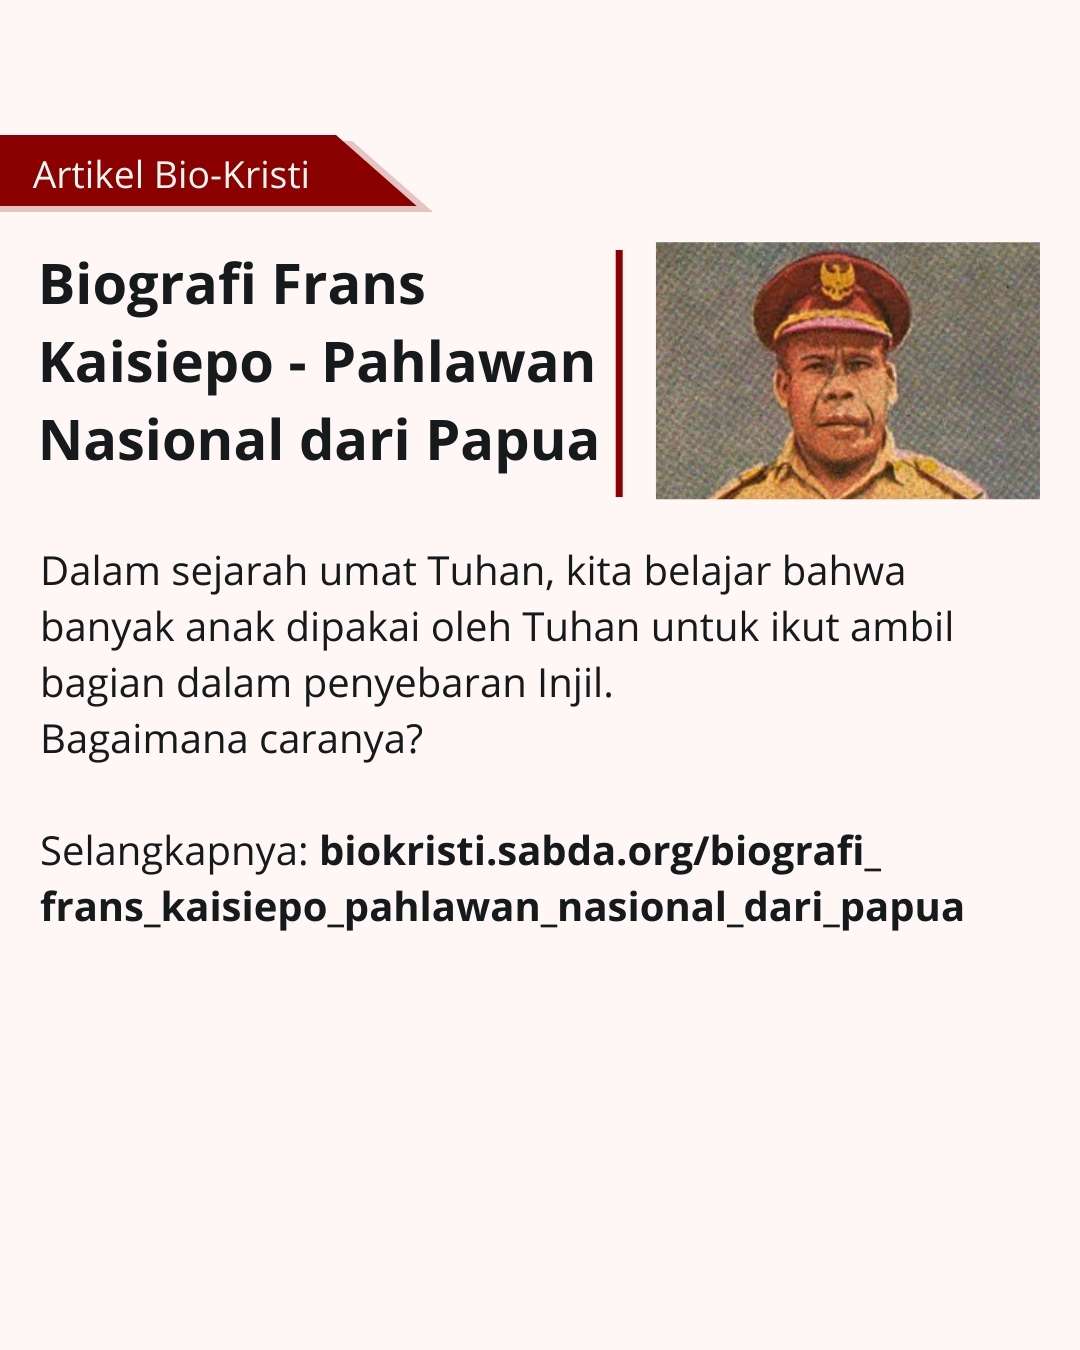 Mengenal Frans Kaisiepo, Pahlawan Nasional dari Papua.